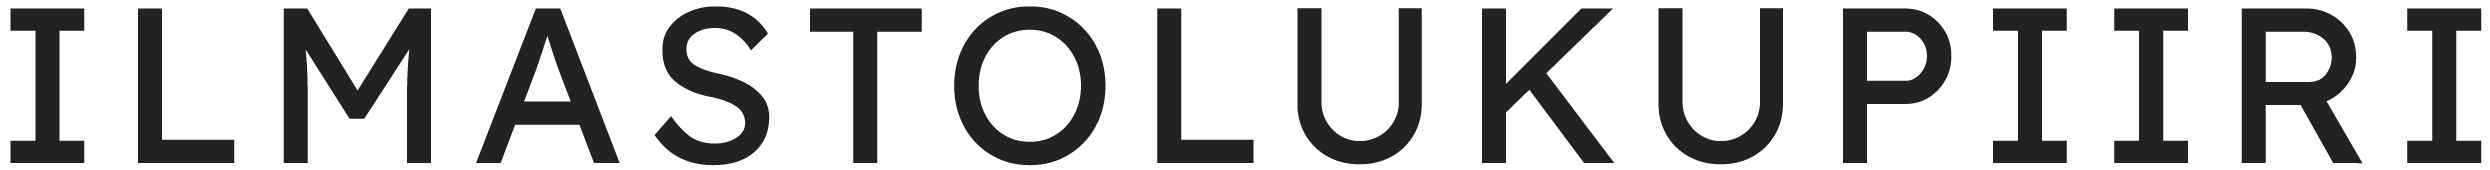 Ilmastolukupiiri: logo